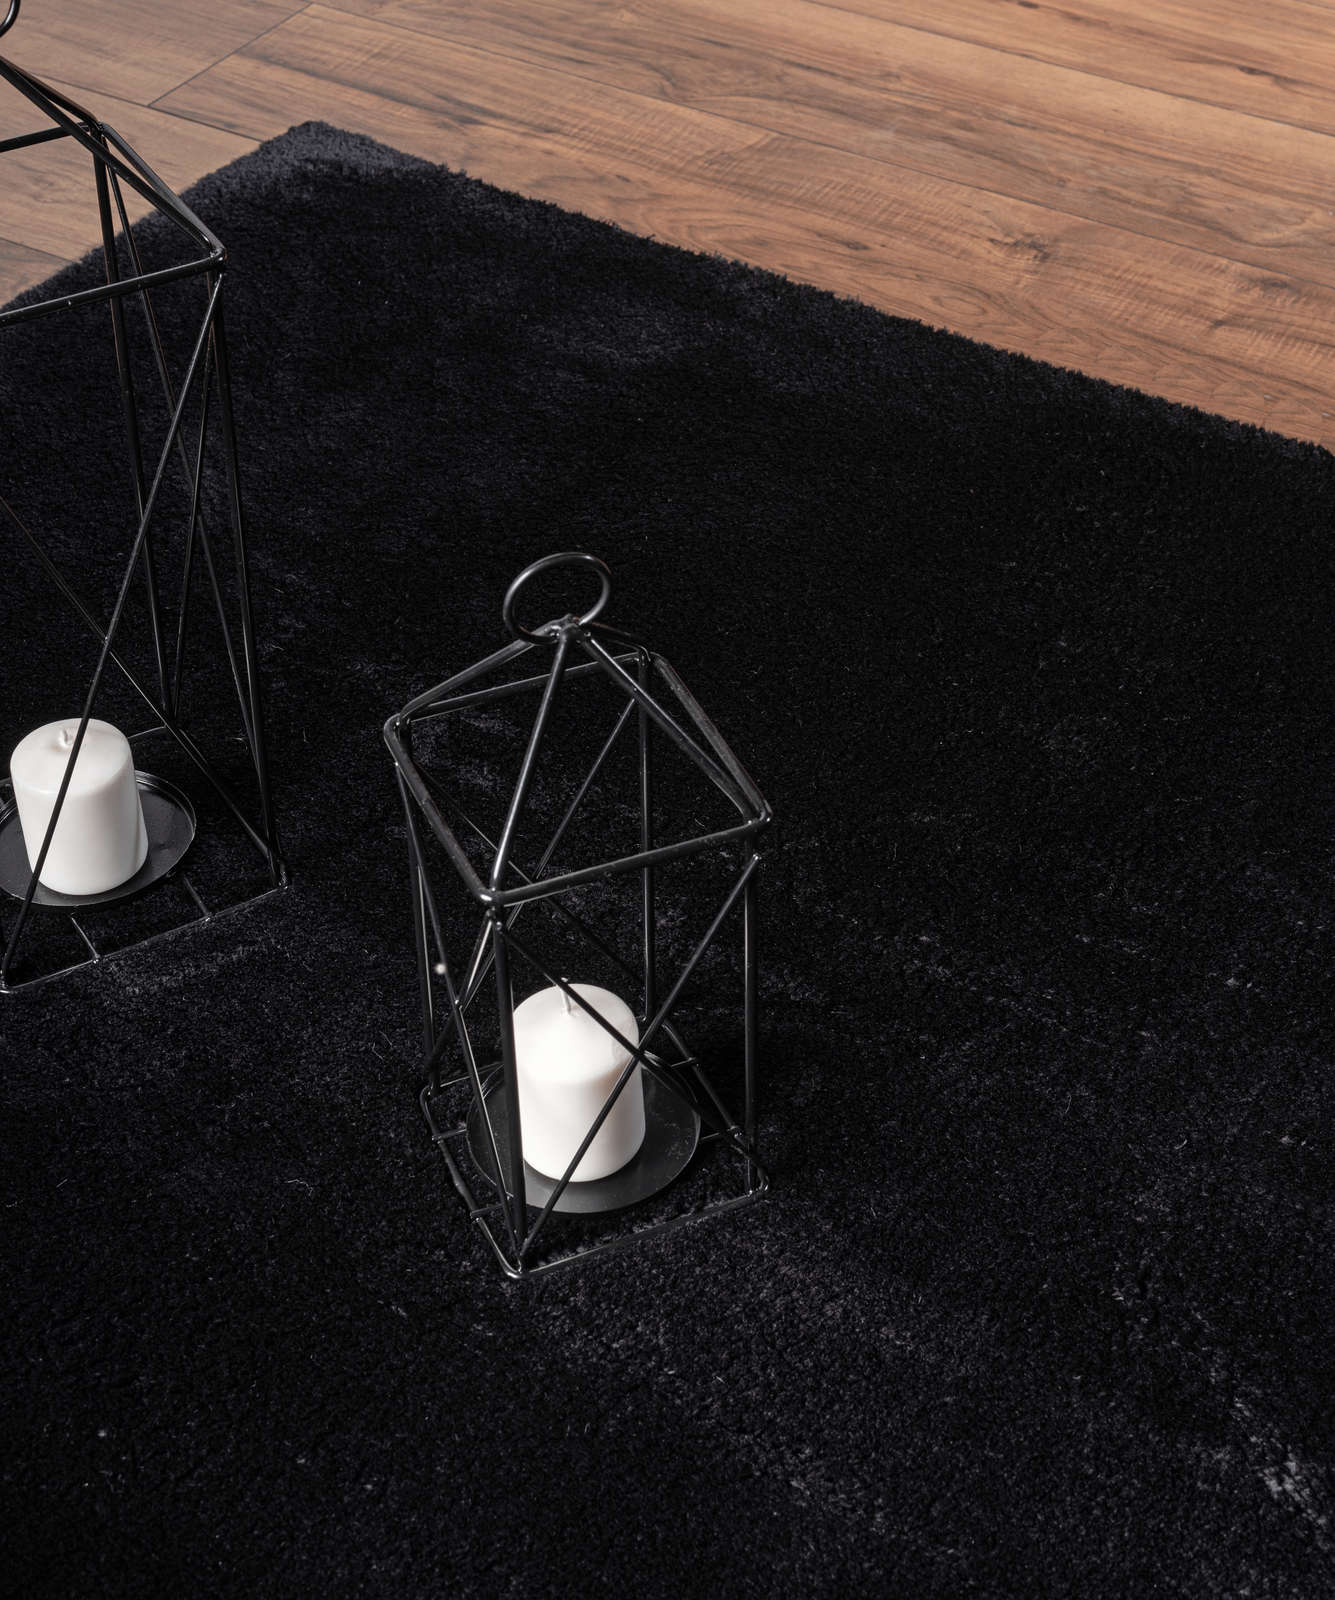             Fluweelzacht hoogpolig tapijt in zwart - 110 x 60 cm
        